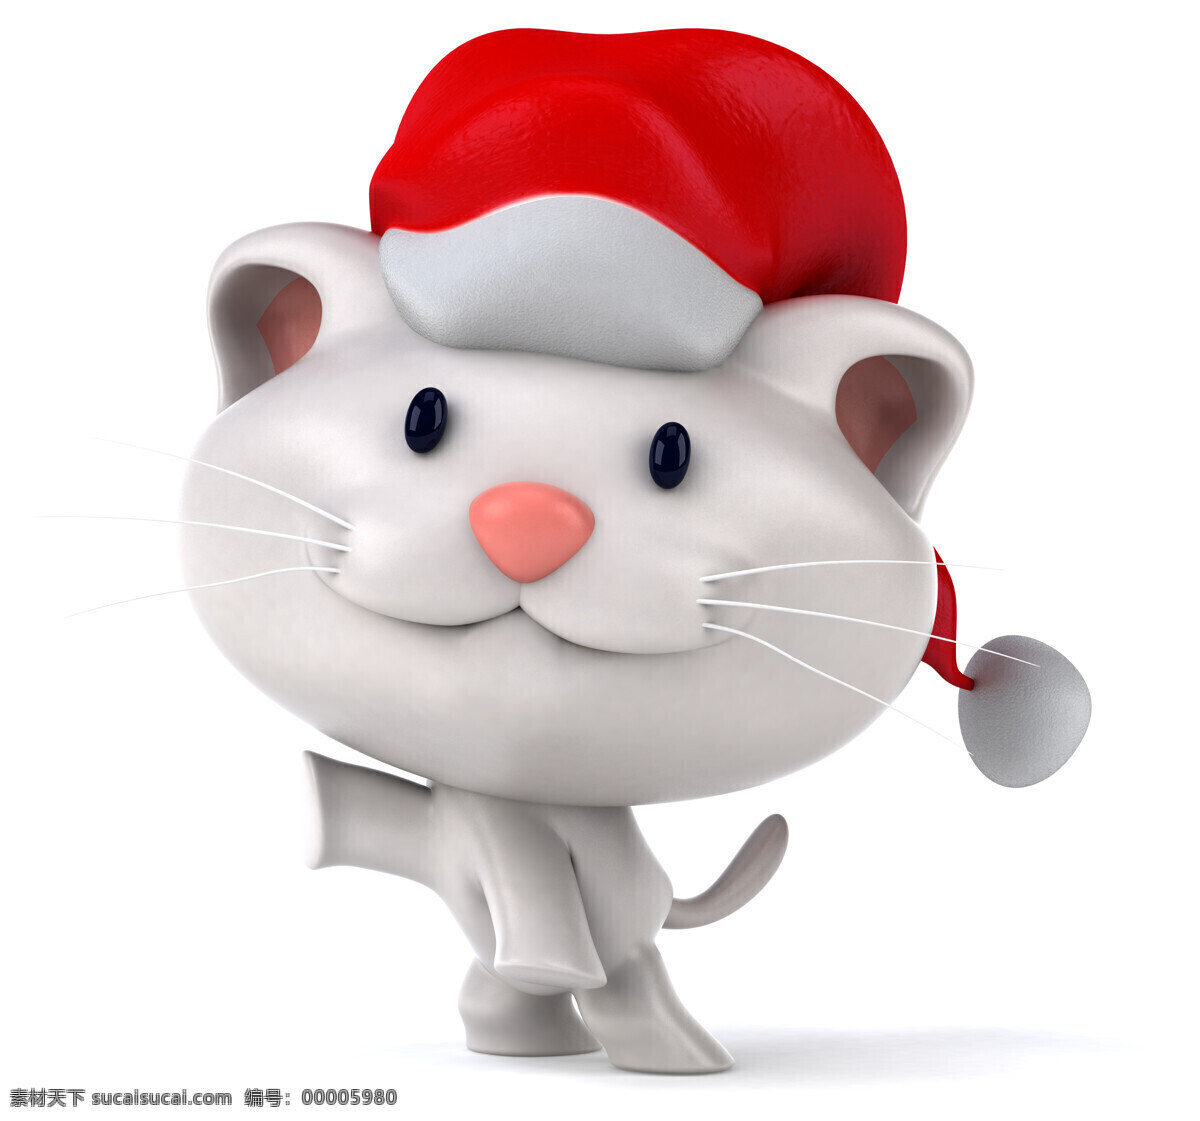 3d 动物图片 3d设计 卡通动物 圣诞节 圣诞帽 小老鼠 3d动物 3d模型素材 其他3d模型